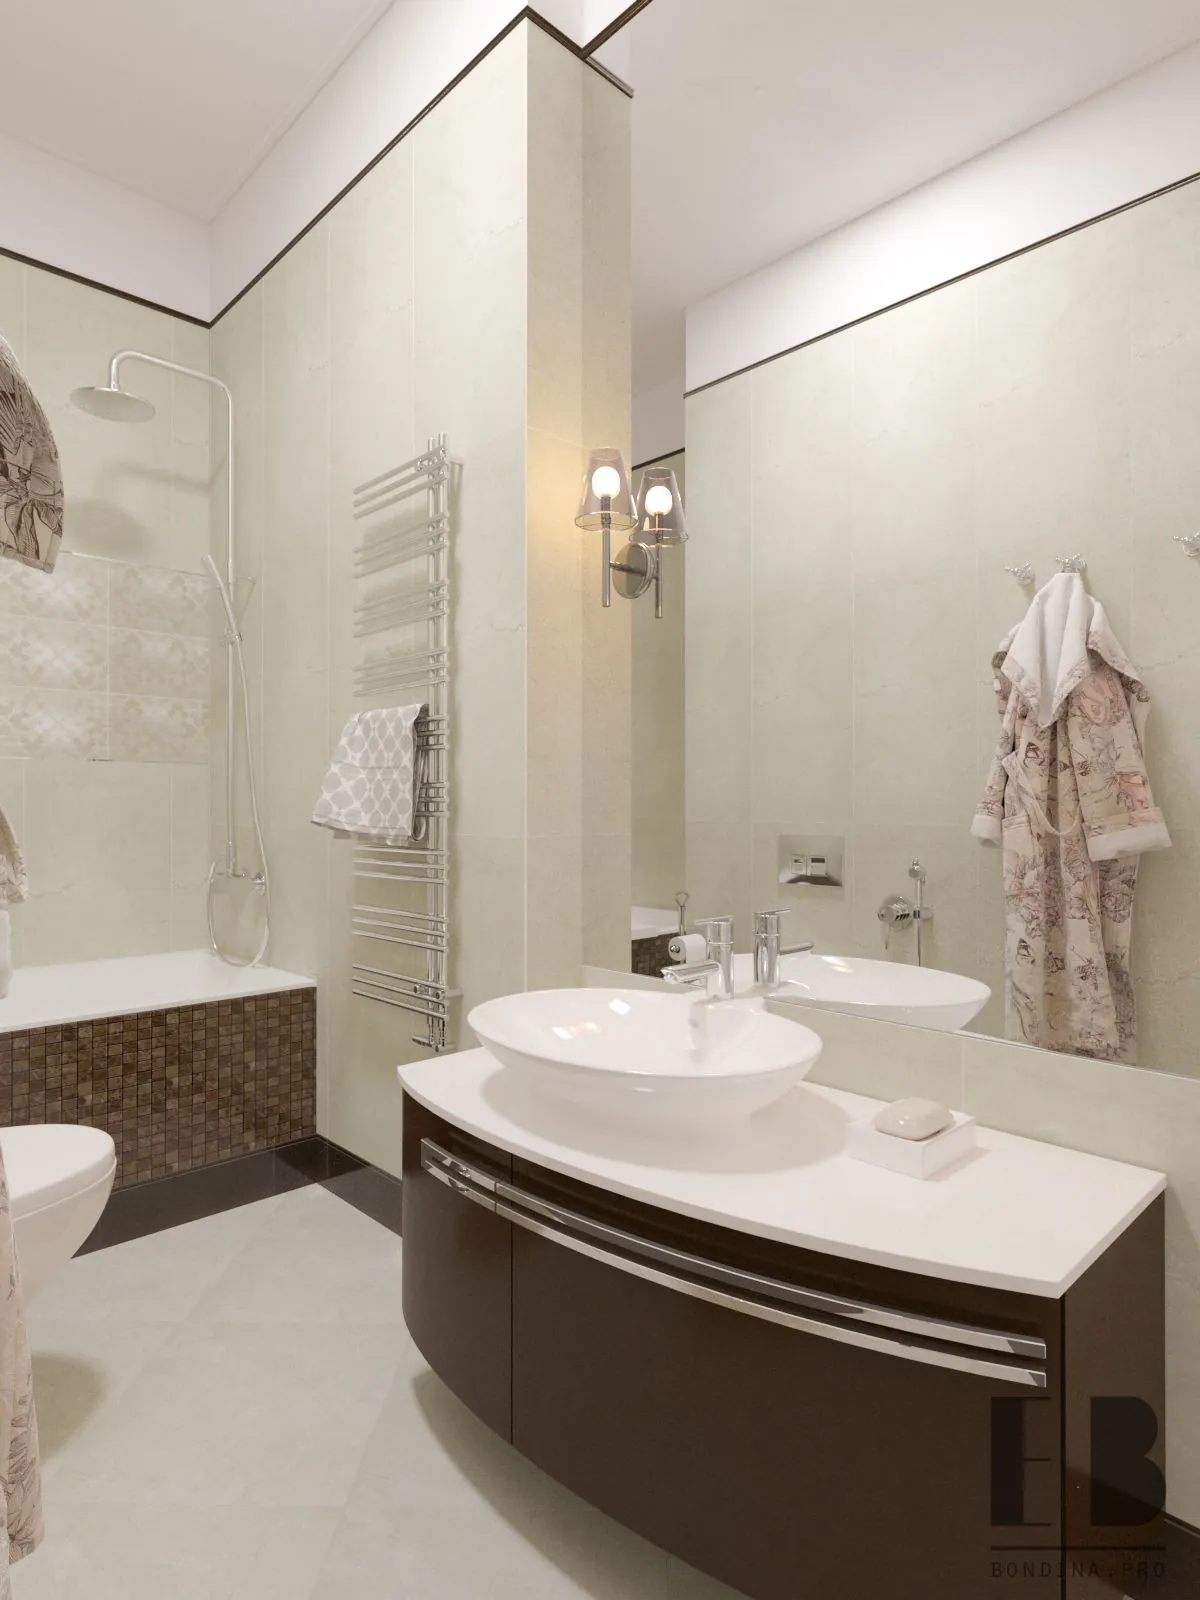 Ванная комната в светлых тонах дизайн интерьера